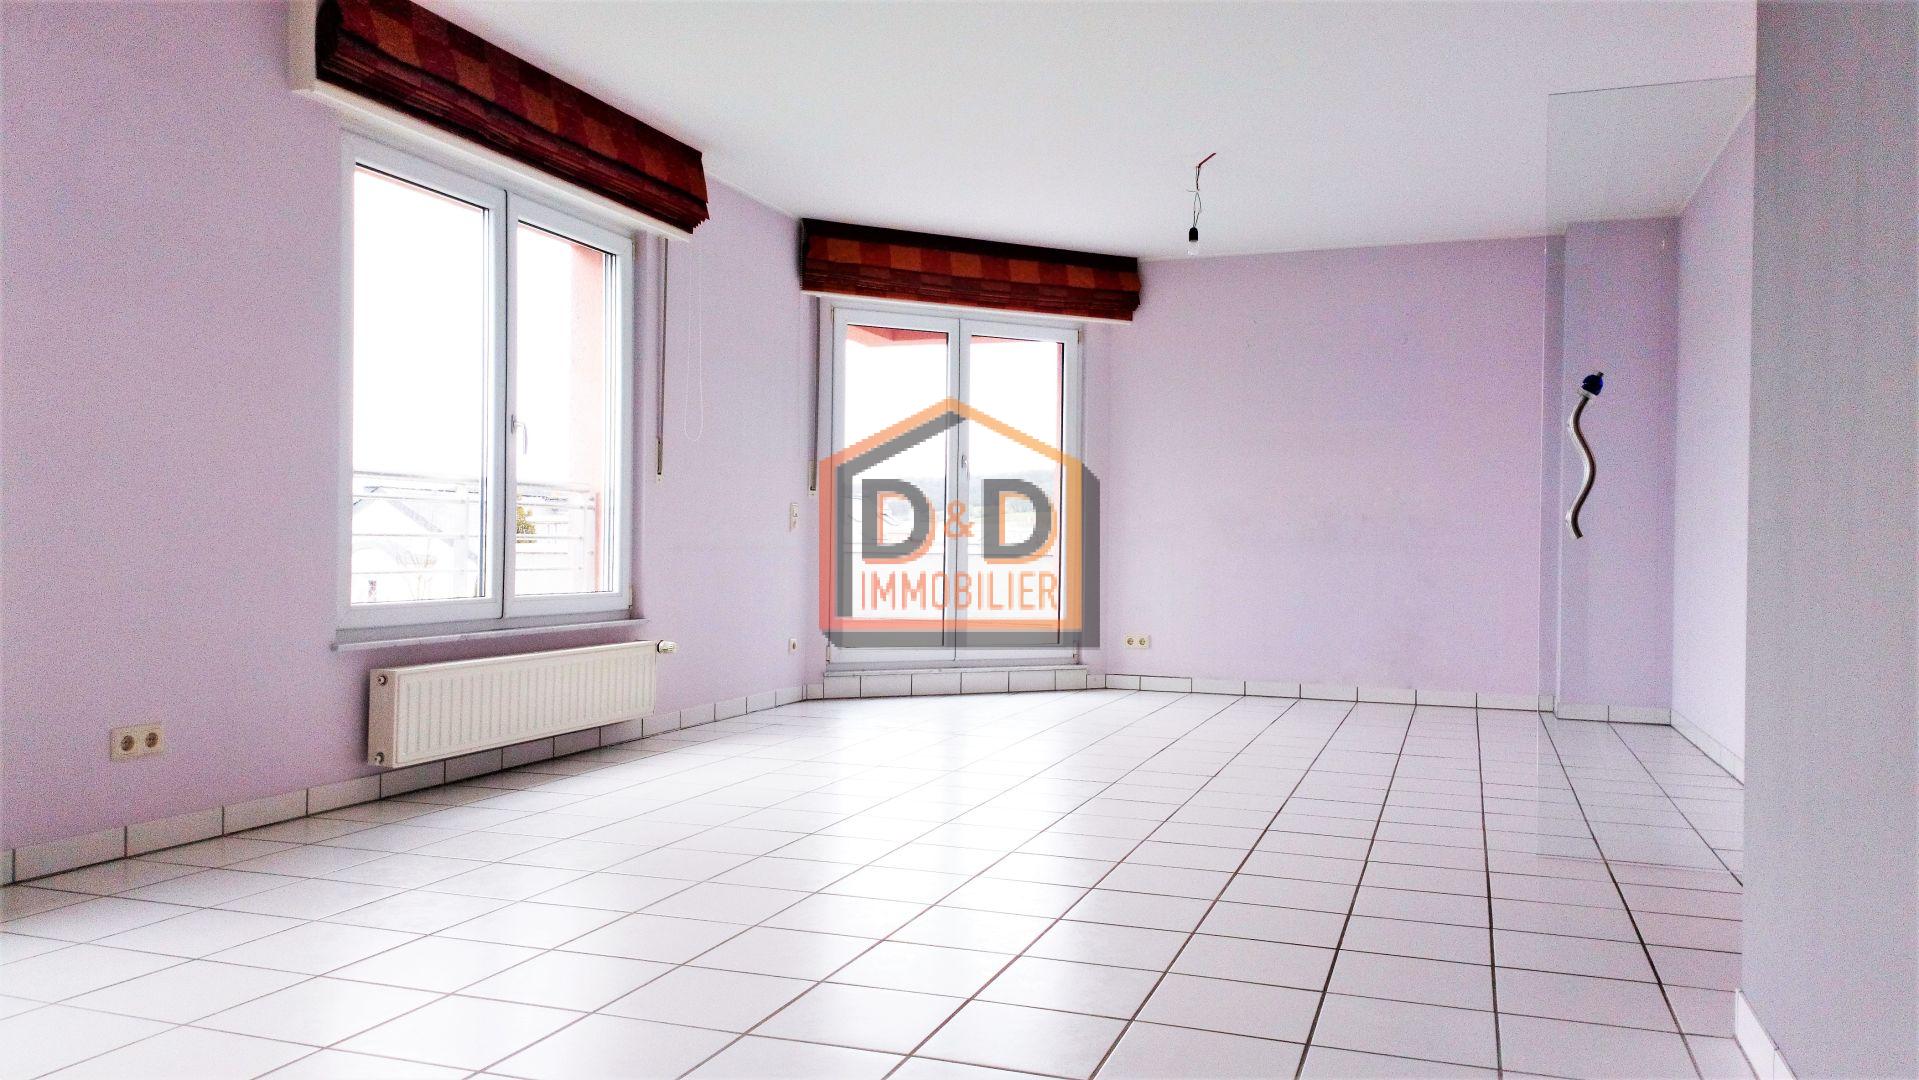 Appartement à Bascharage, 83 m², 2 chambres, 1 salle de bain, 1 500 €/mois